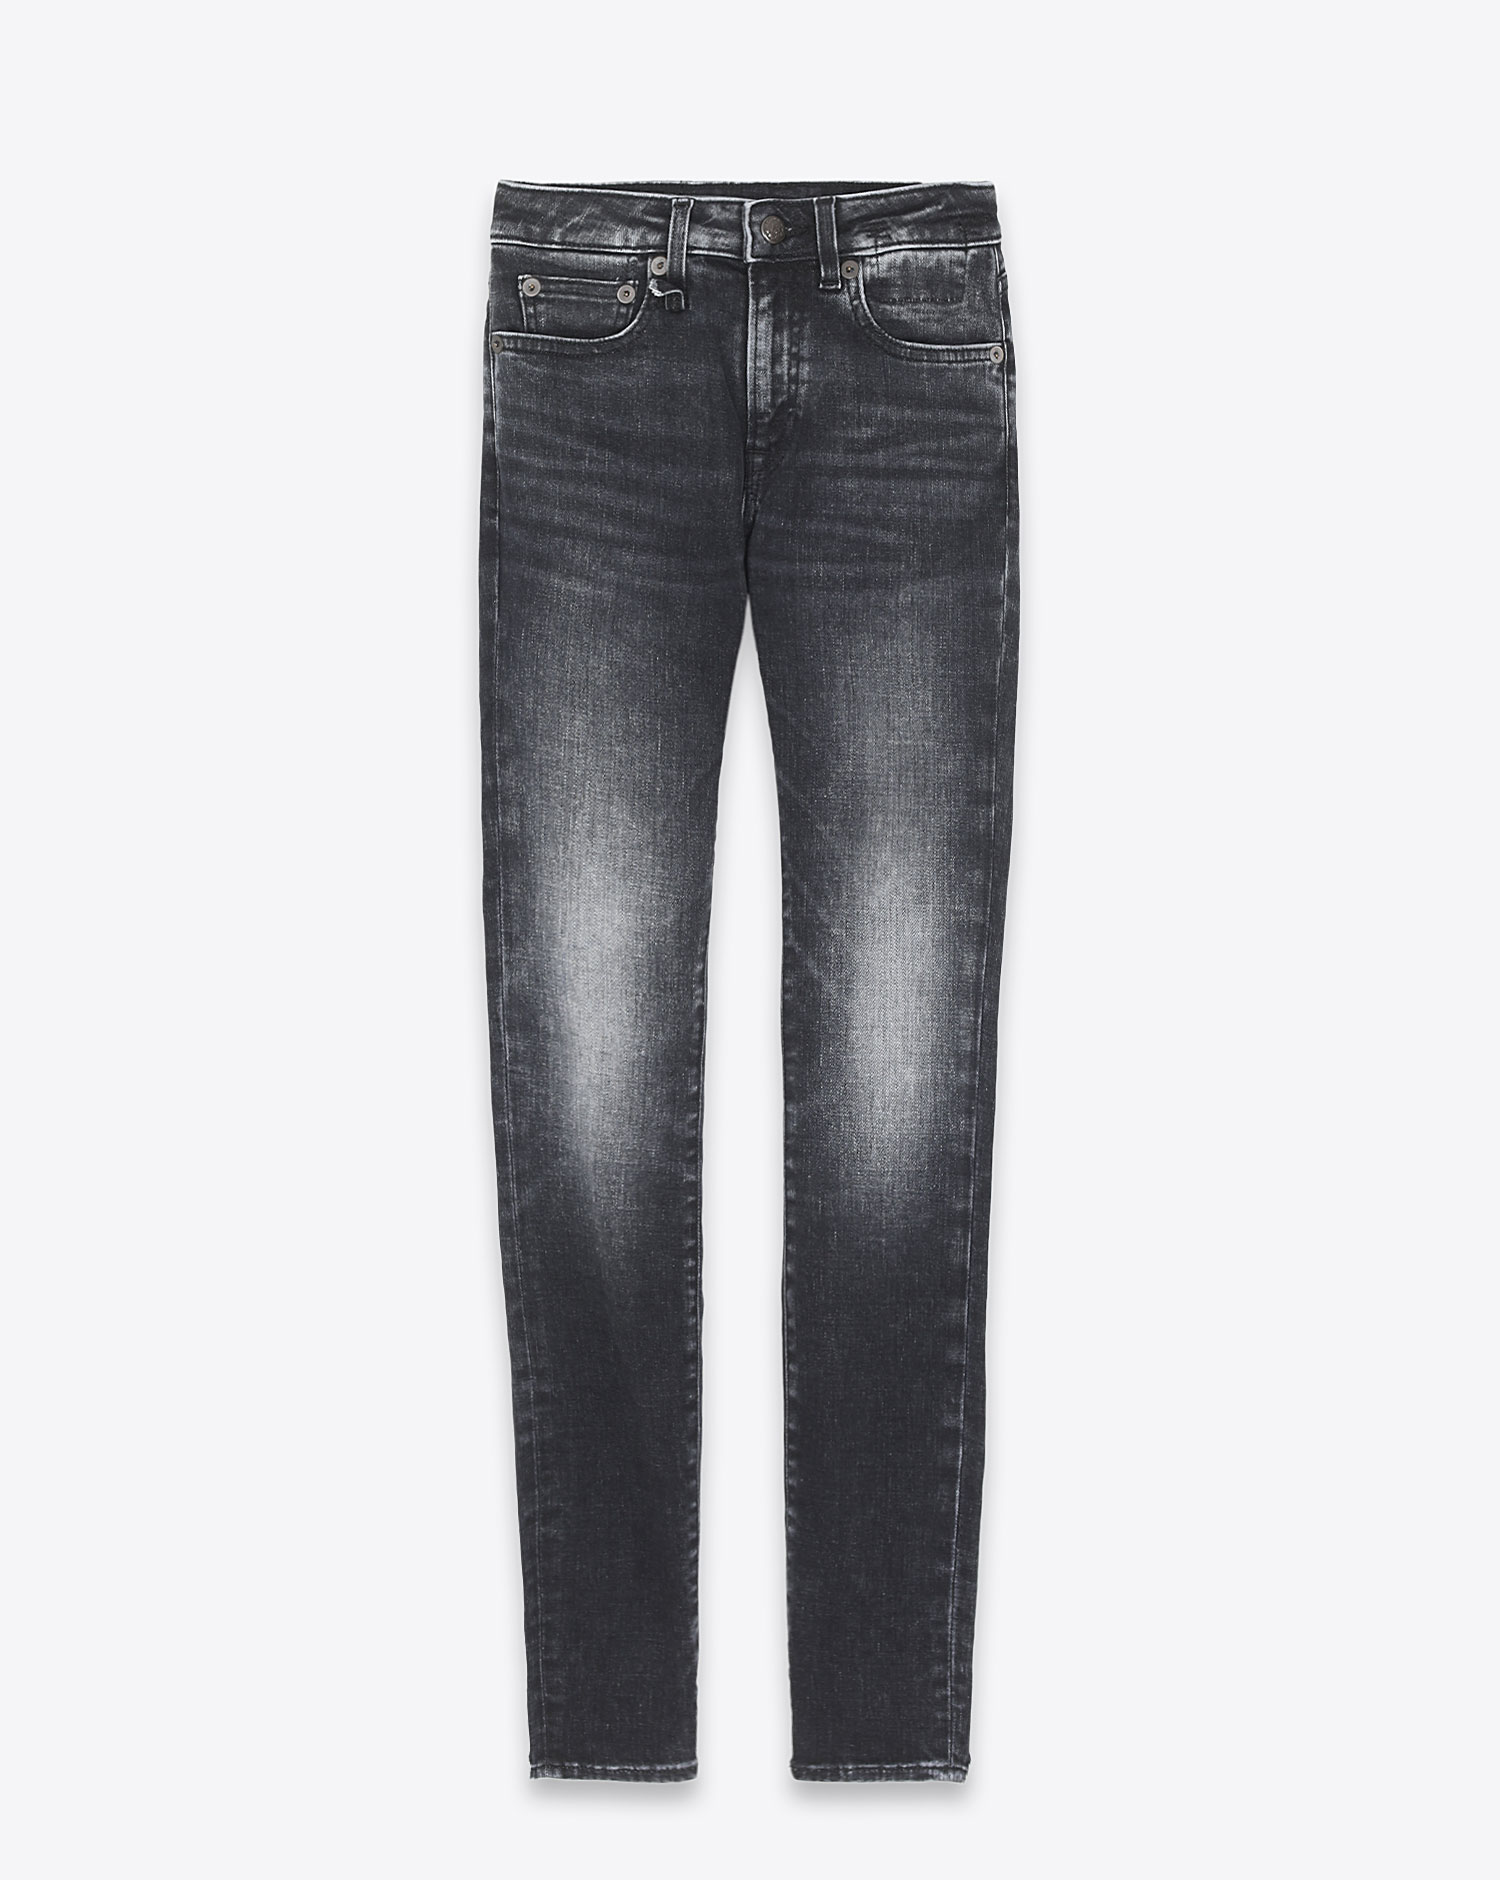 Jeans Alison Skinny R13 Denim 